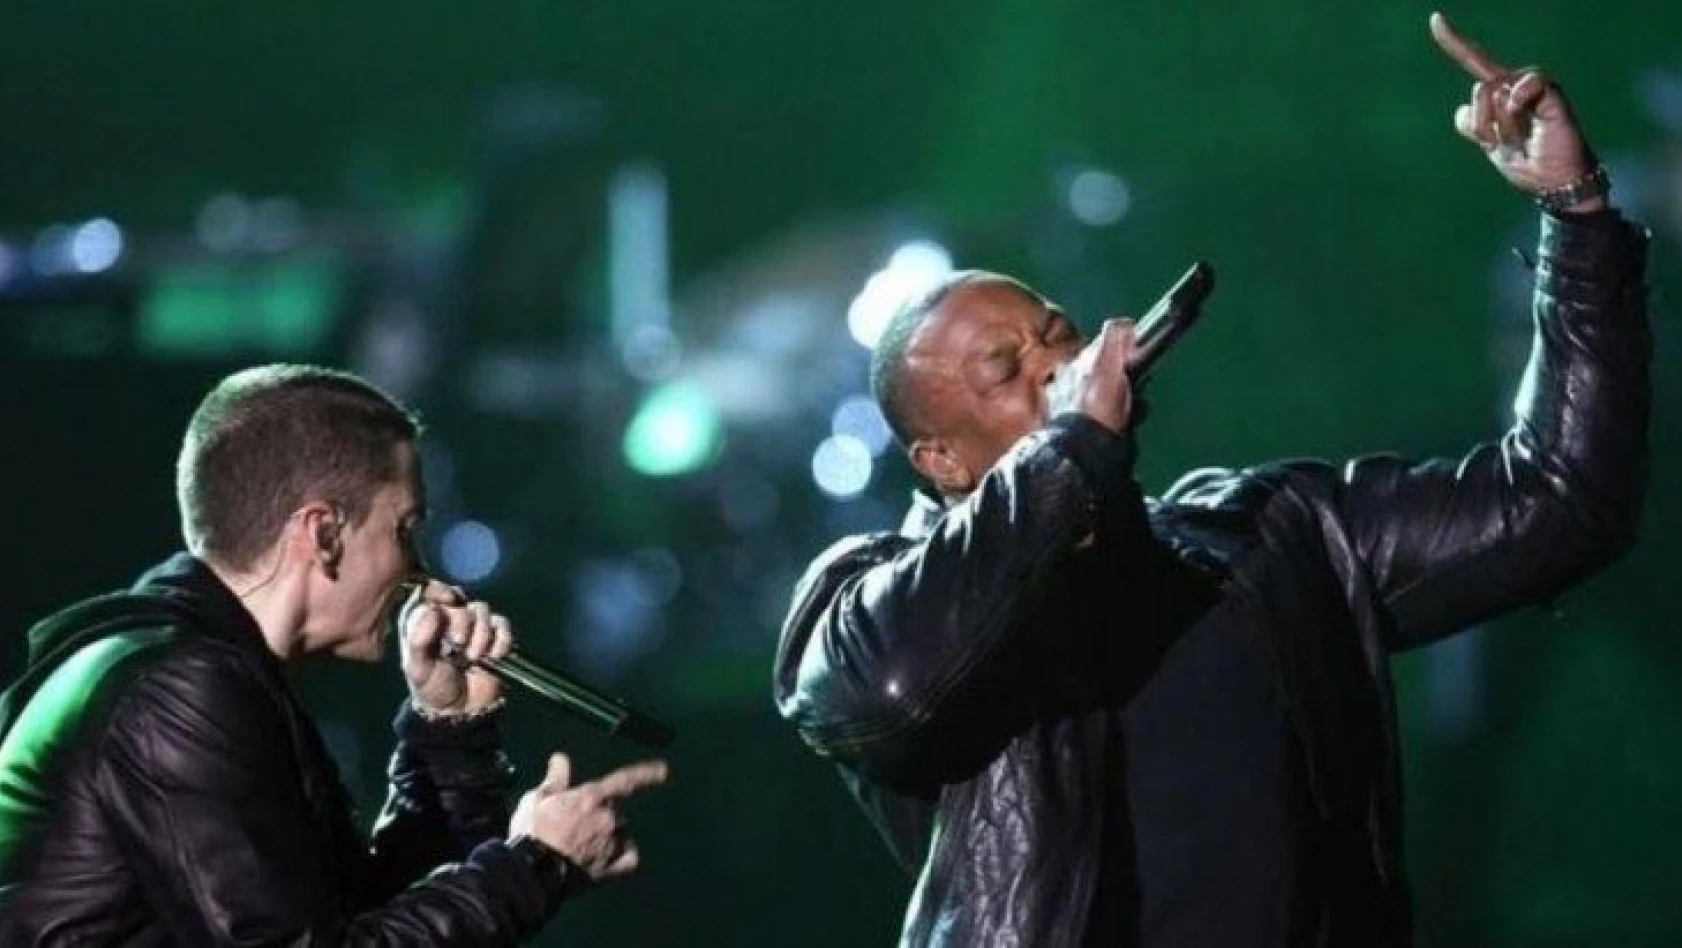 Şarkıcı Dr. Dre, apar topar hastaneye kaldırıldı